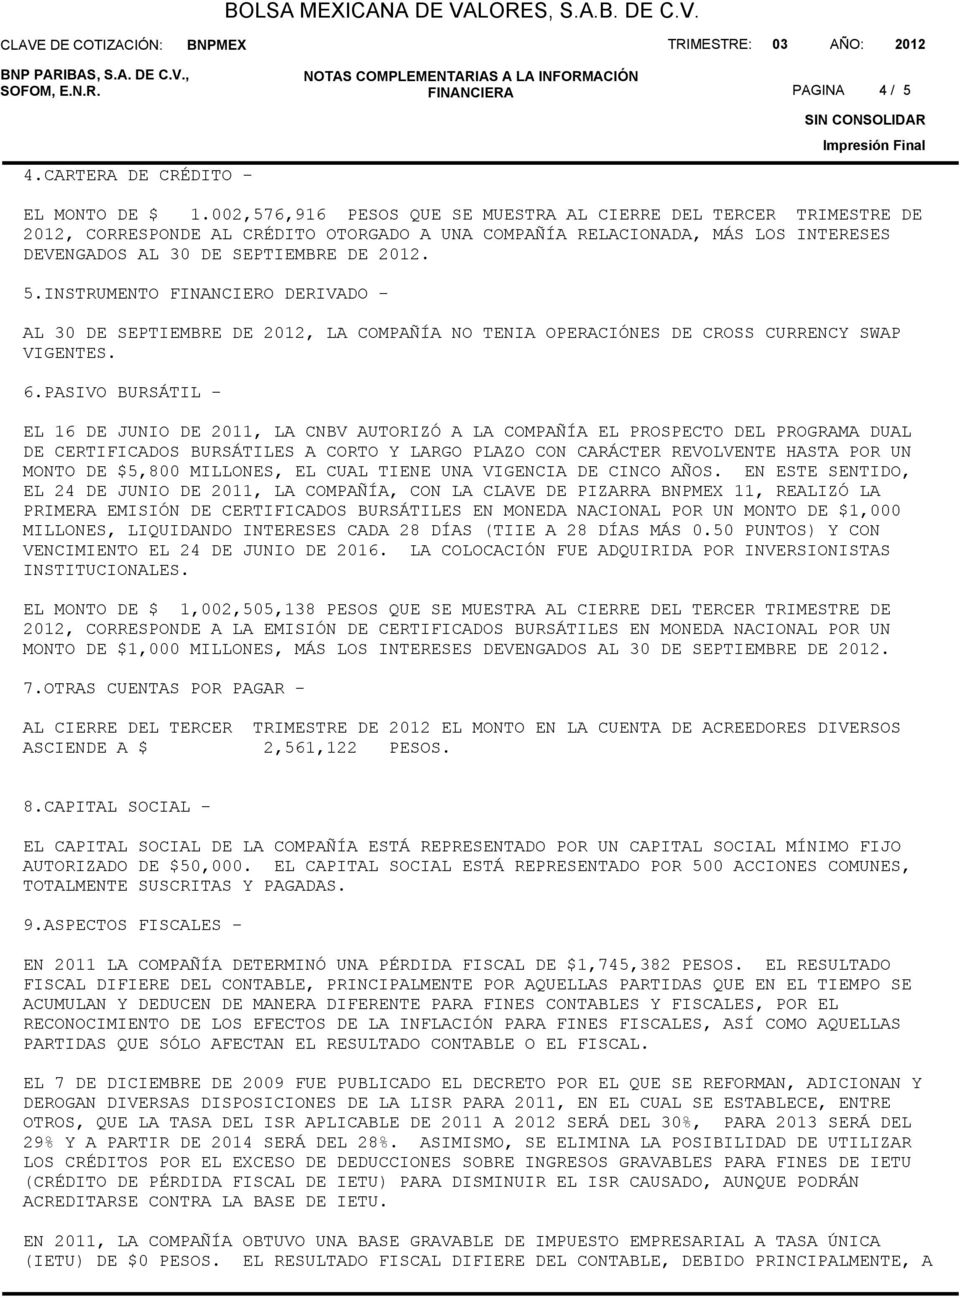 INSTRUMENTO FINANCIERO DERIVADO - AL 30 DE SEPTIEMBRE DE 2012, LA COMPAÑÍA NO TENIA OPERACIÓNES DE CROSS CURRENCY SWAP VIGENTES. 6.